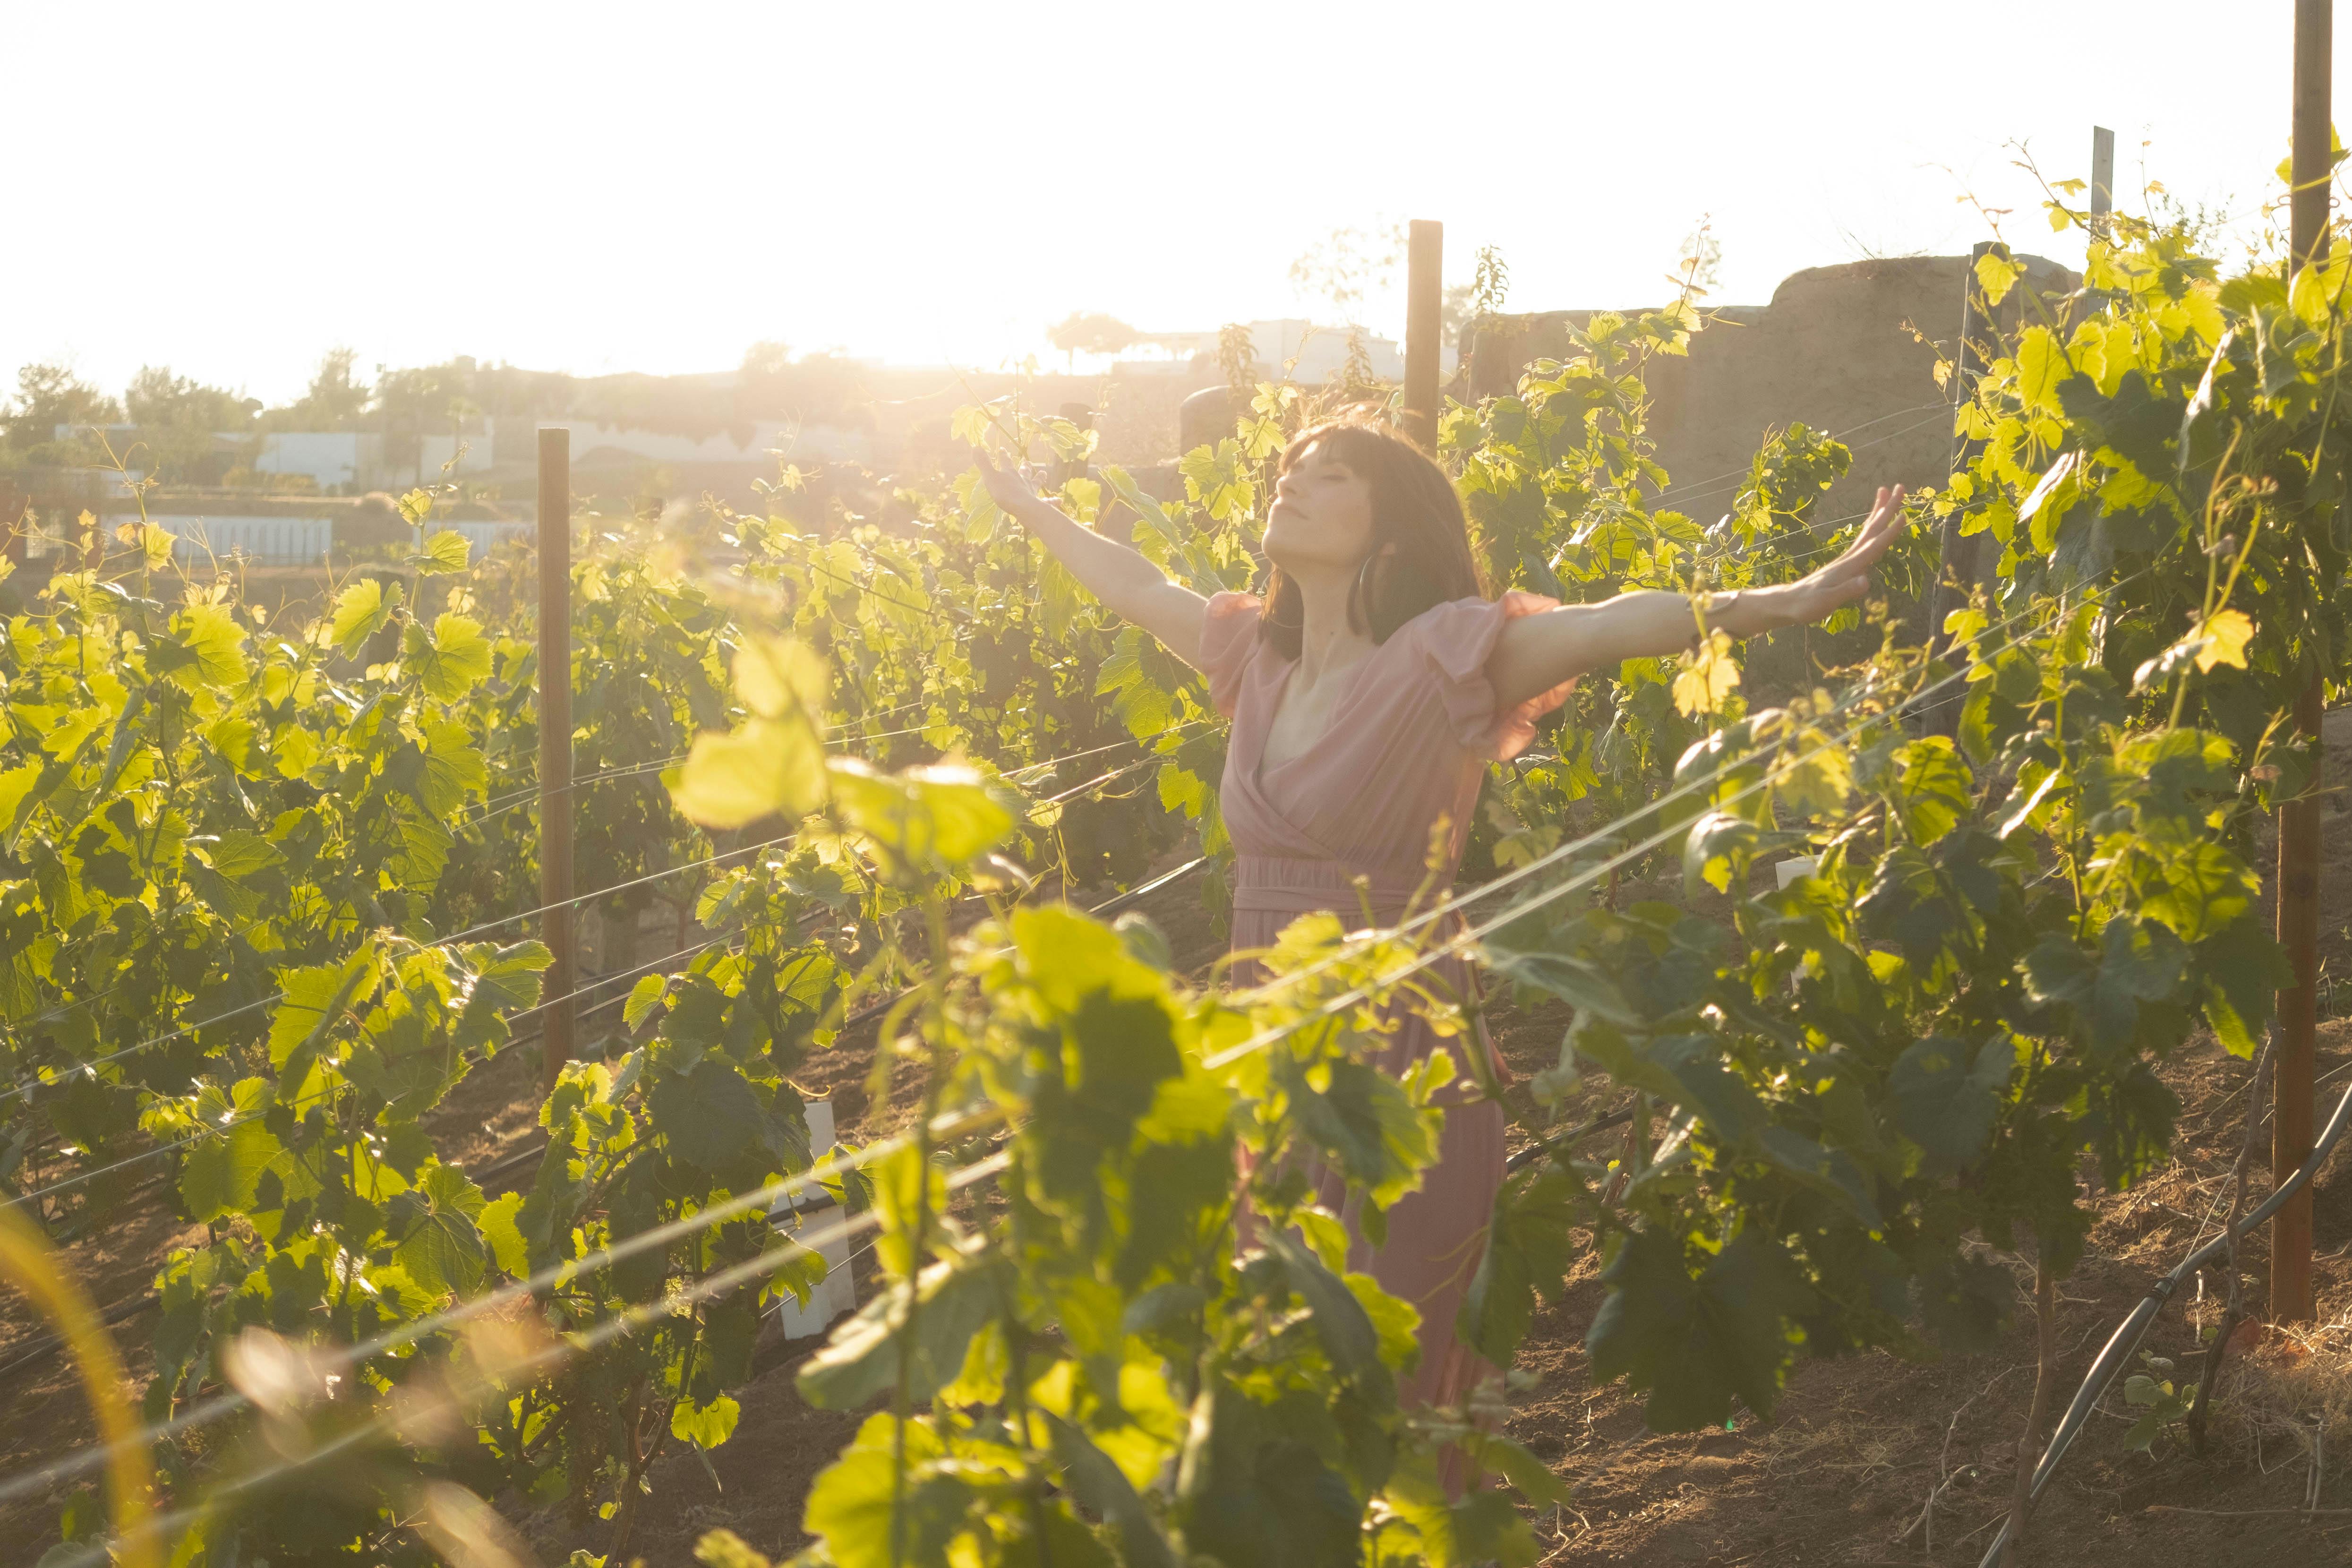 a woman wearing a dress in a vineyard